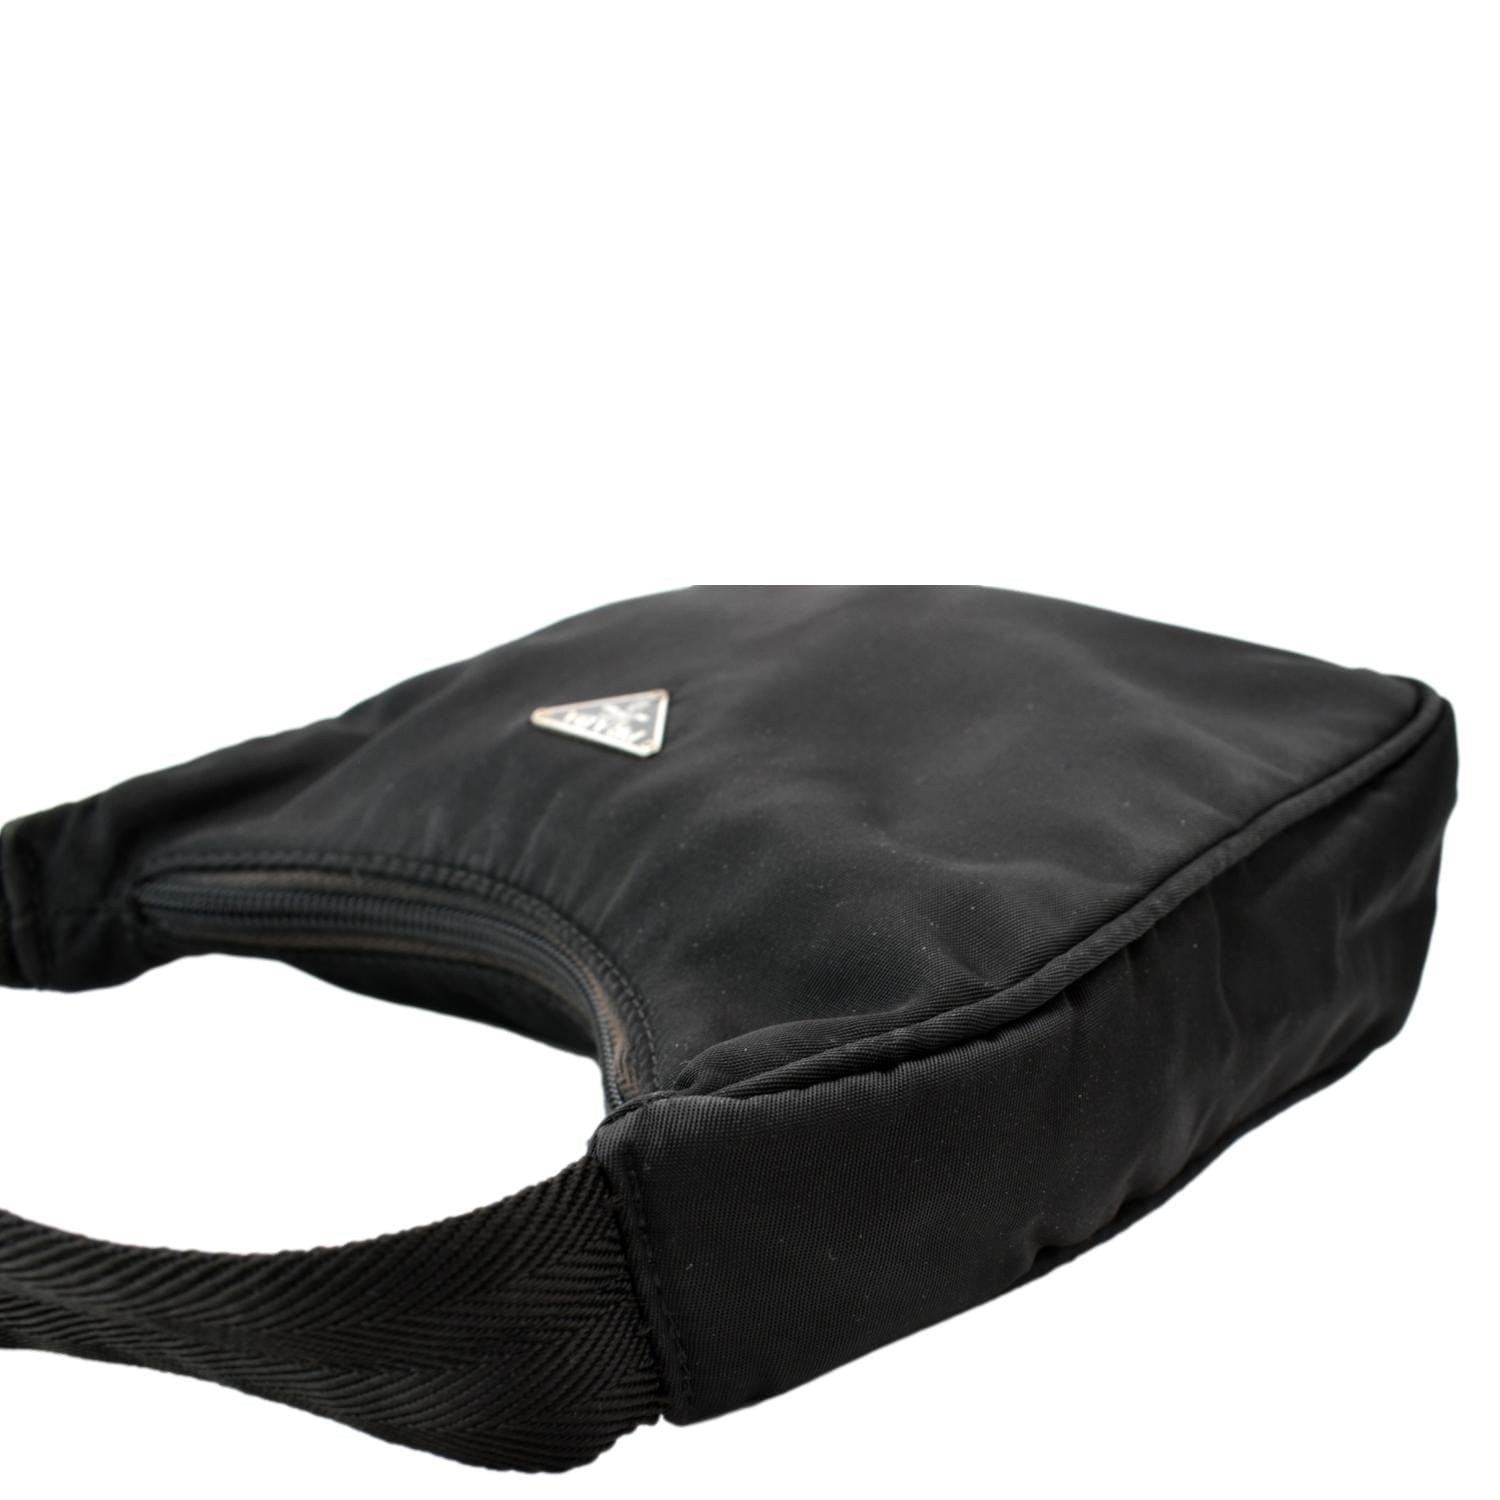 Prada Vintage Tessuto Mini Bag - Black Mini Bags, Handbags